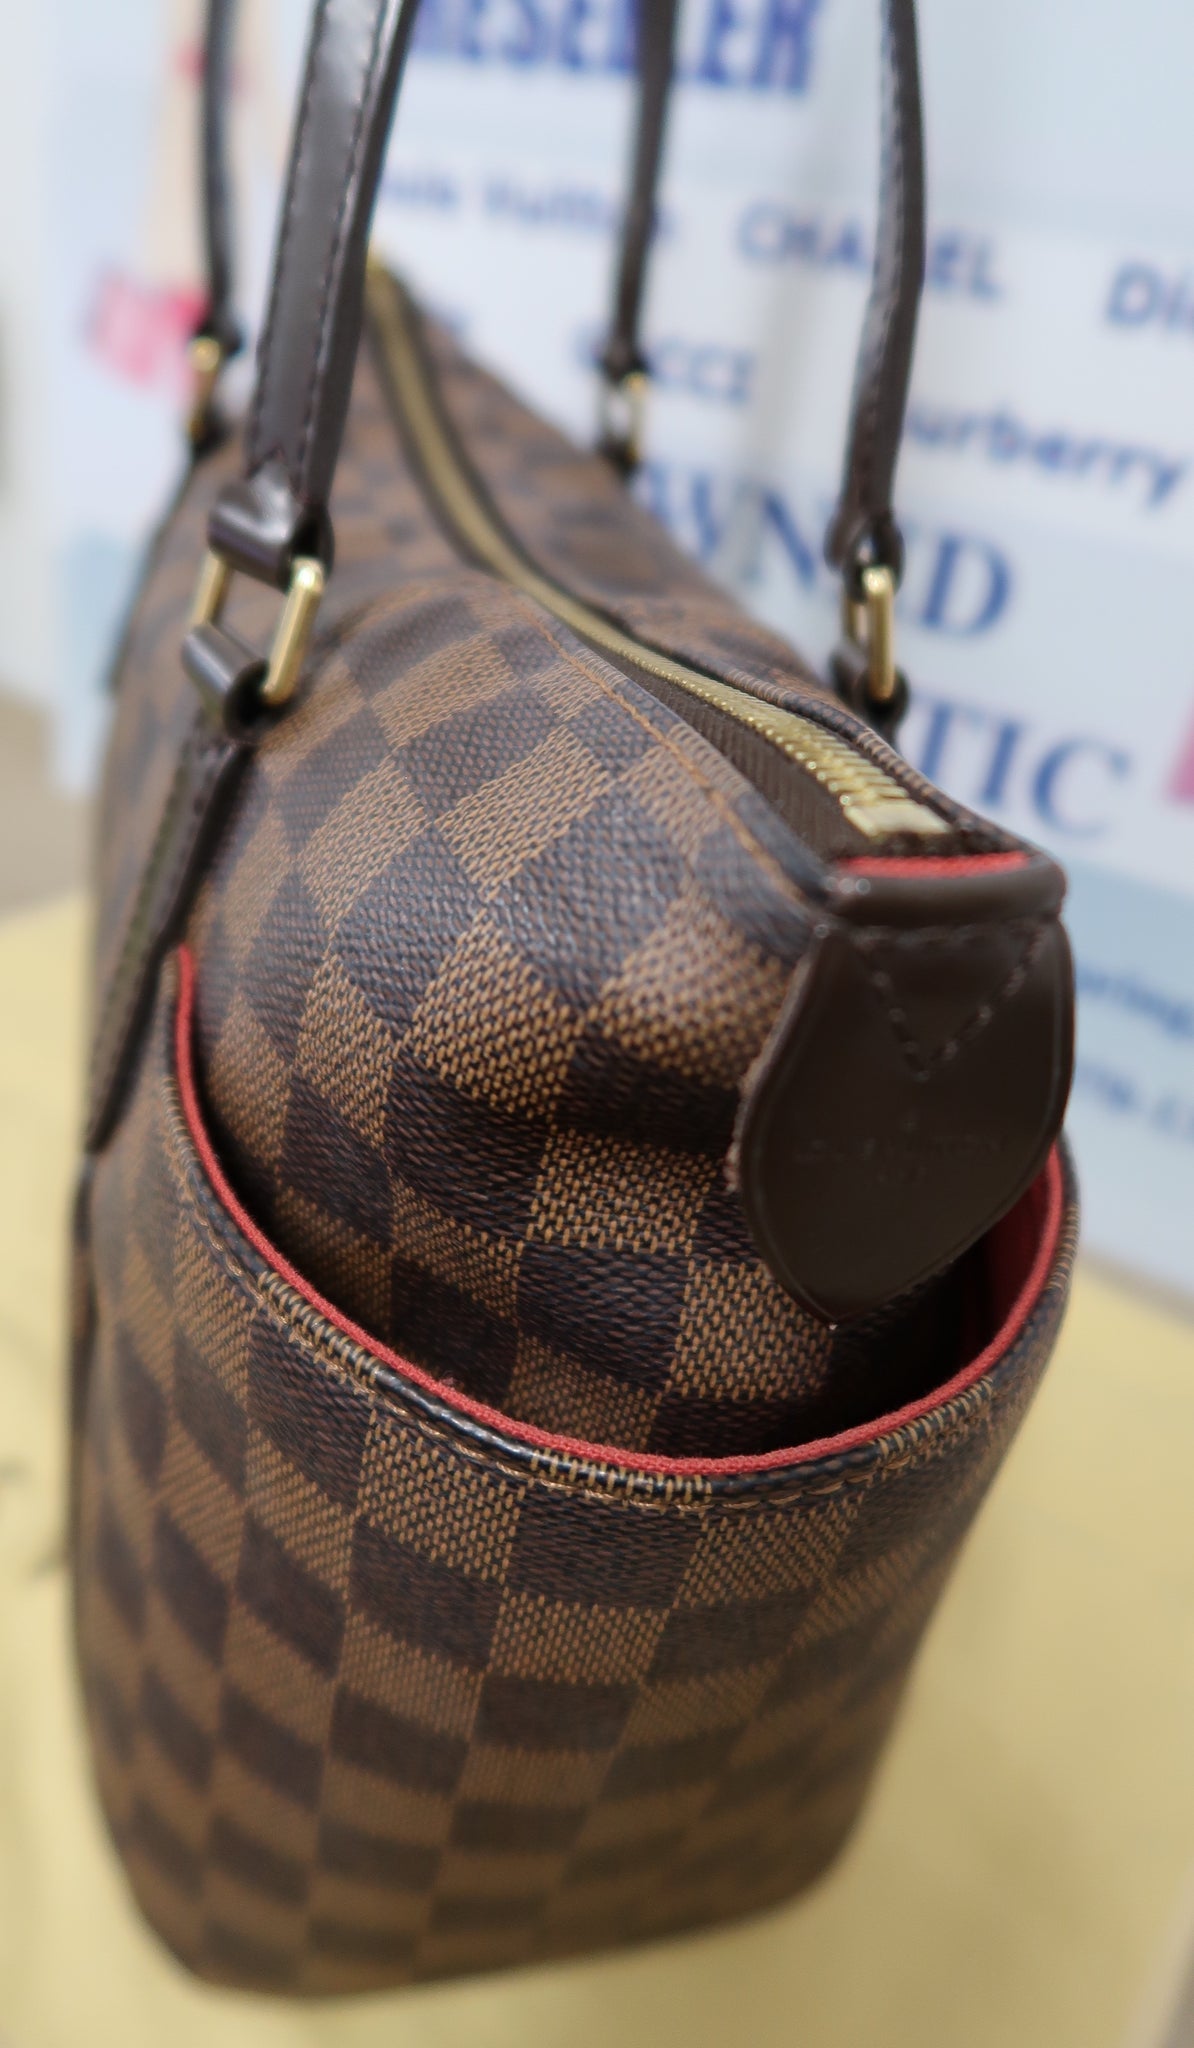 Authentic Louis Vuitton Damier Ebene Canvas Totally mm Shoulder Bag